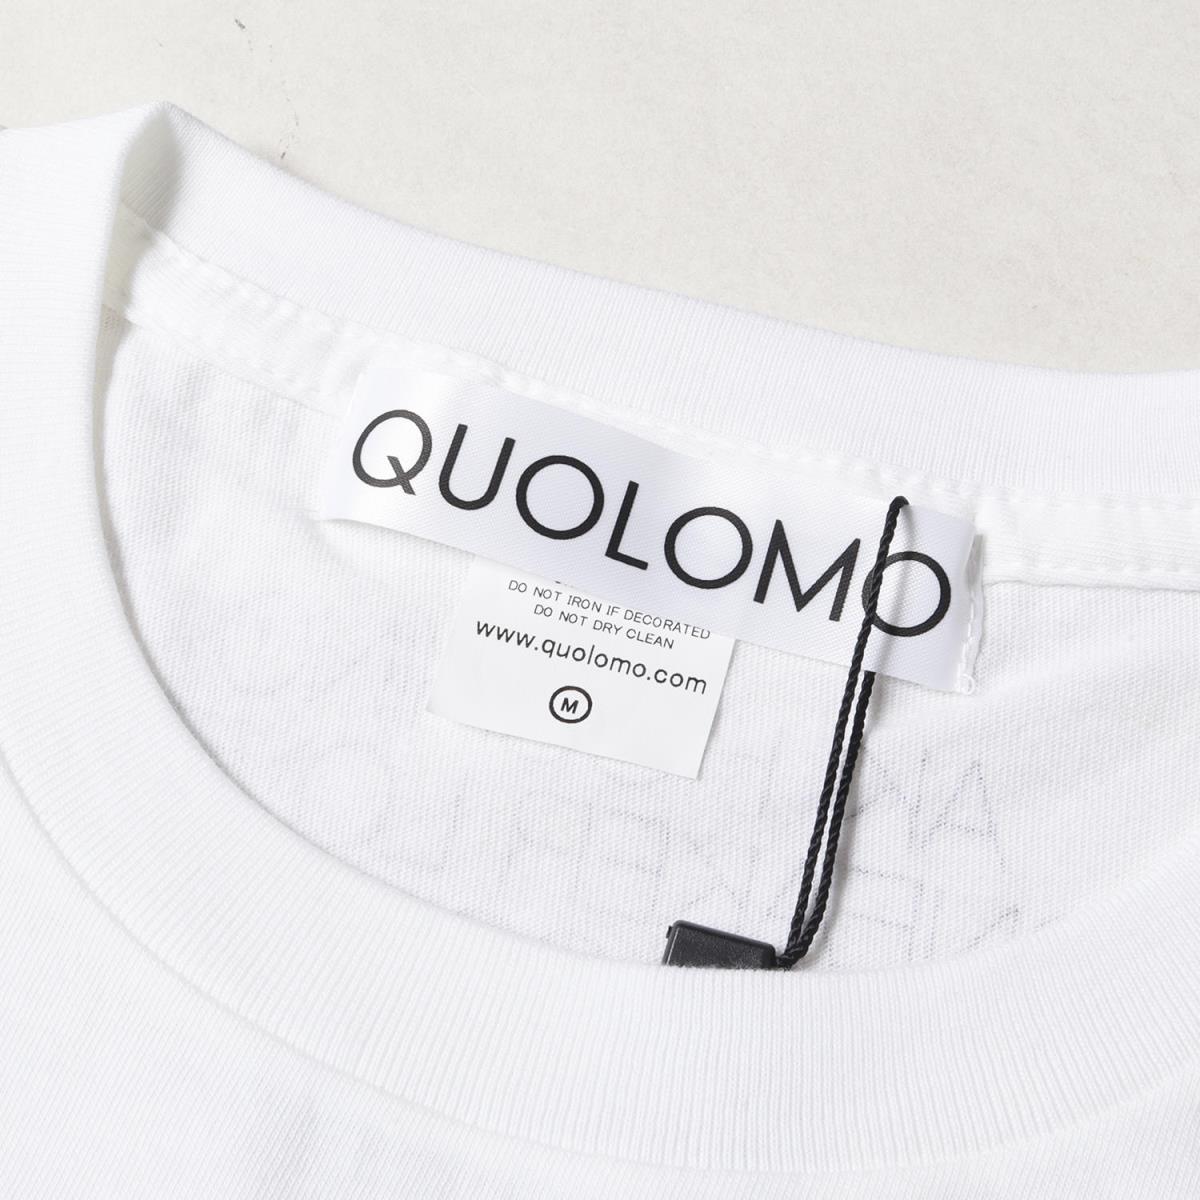 代引き可 【新品未使用】QUOLOMO Tシャツ ほしのあき Tシャツ/カットソー(半袖/袖なし)